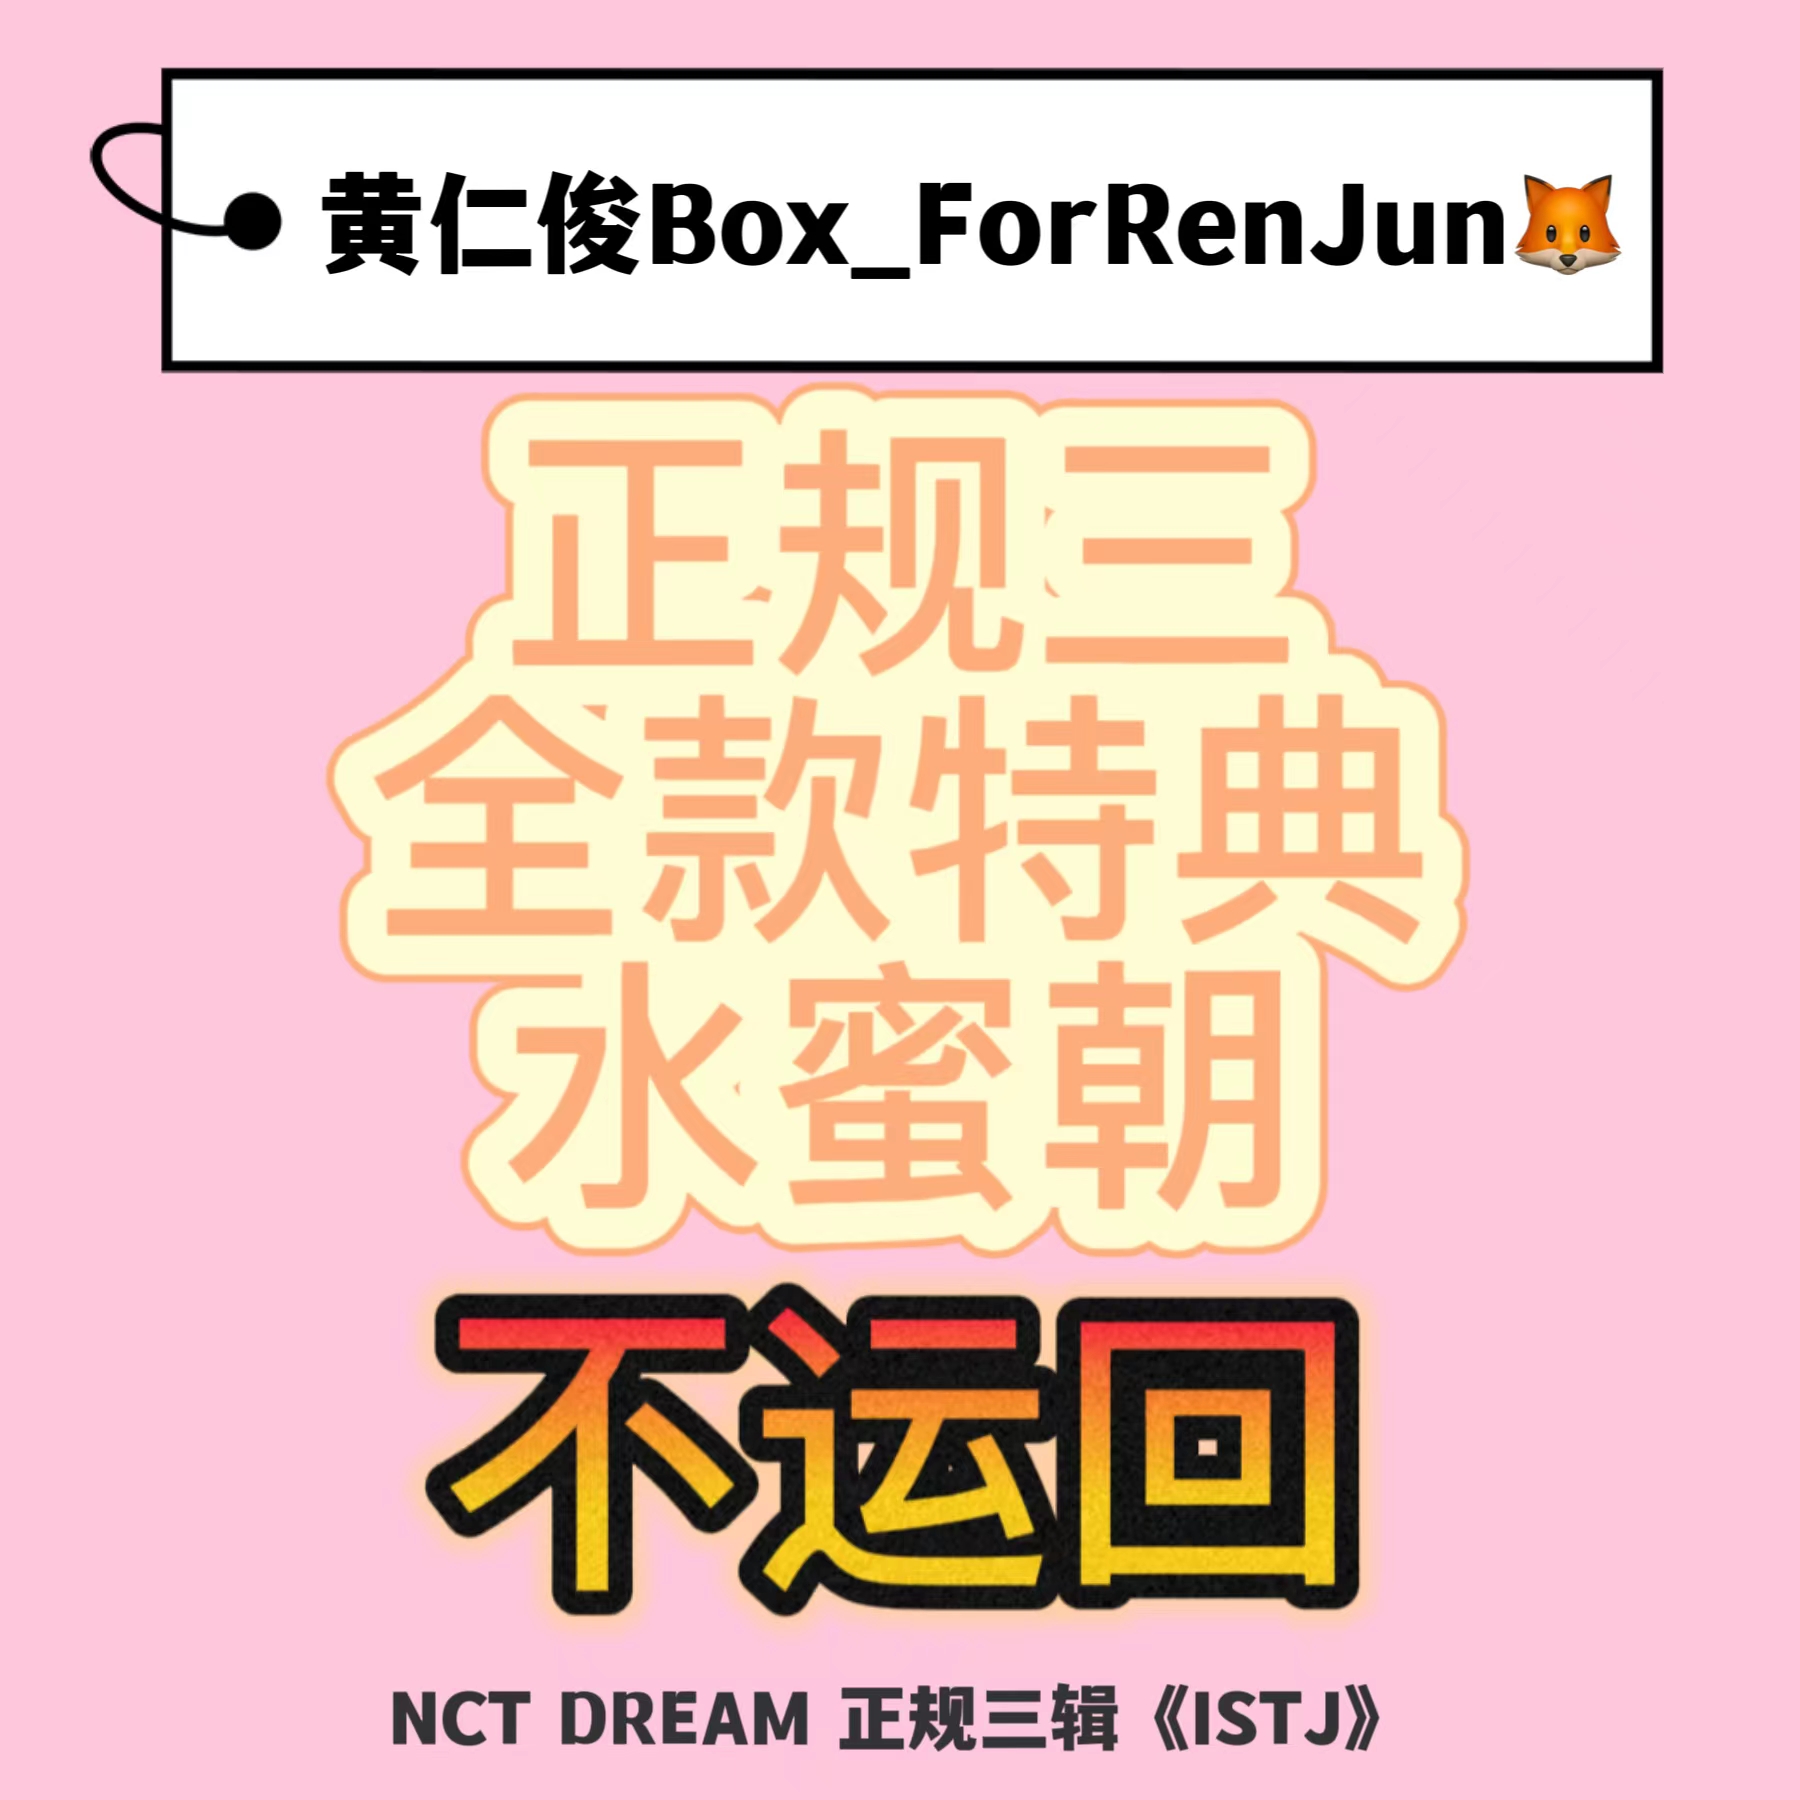 [拆卡专 水蜜朝 特典专] [Ktown4u Special Gift] NCT DREAM - 正规3辑 [ISTJ] (Photobook Ver.) (随机版本)_黄仁俊吧RenJunBar